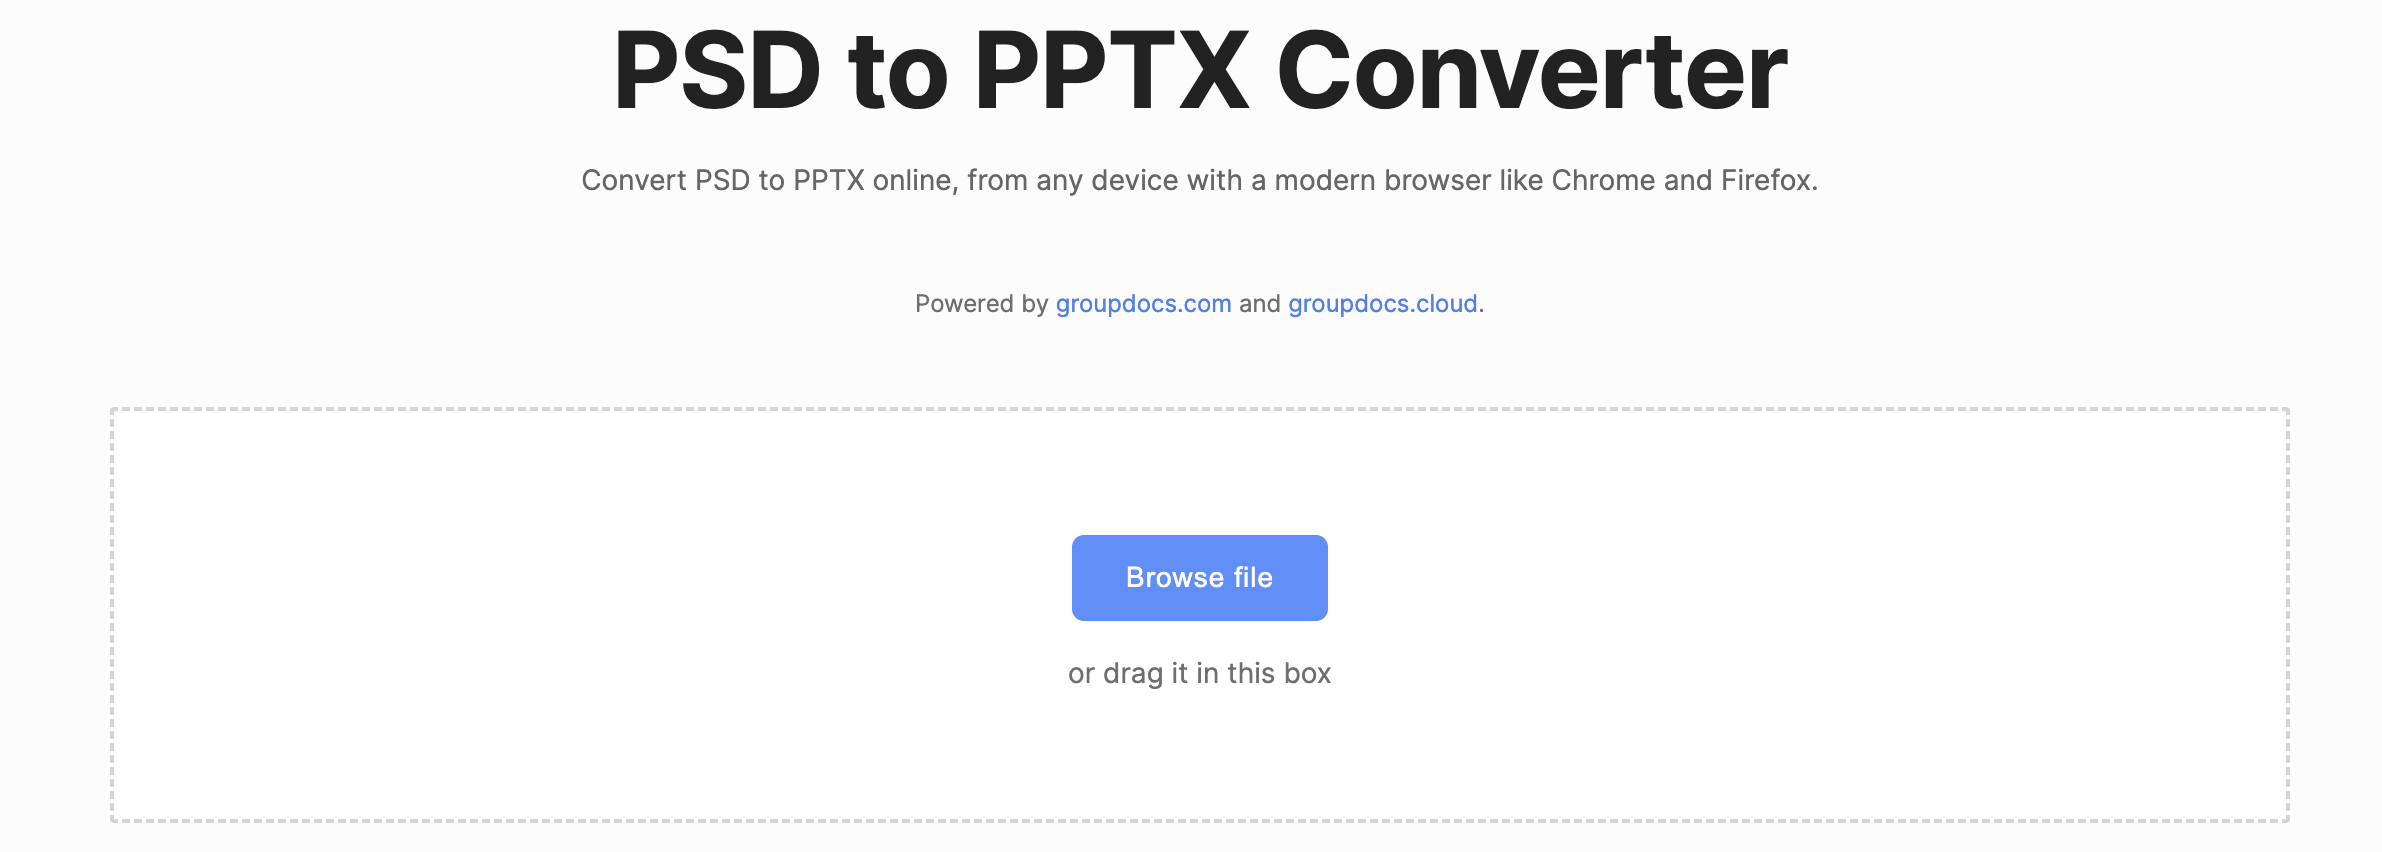 Konvertieren Sie PSD online in PPTX